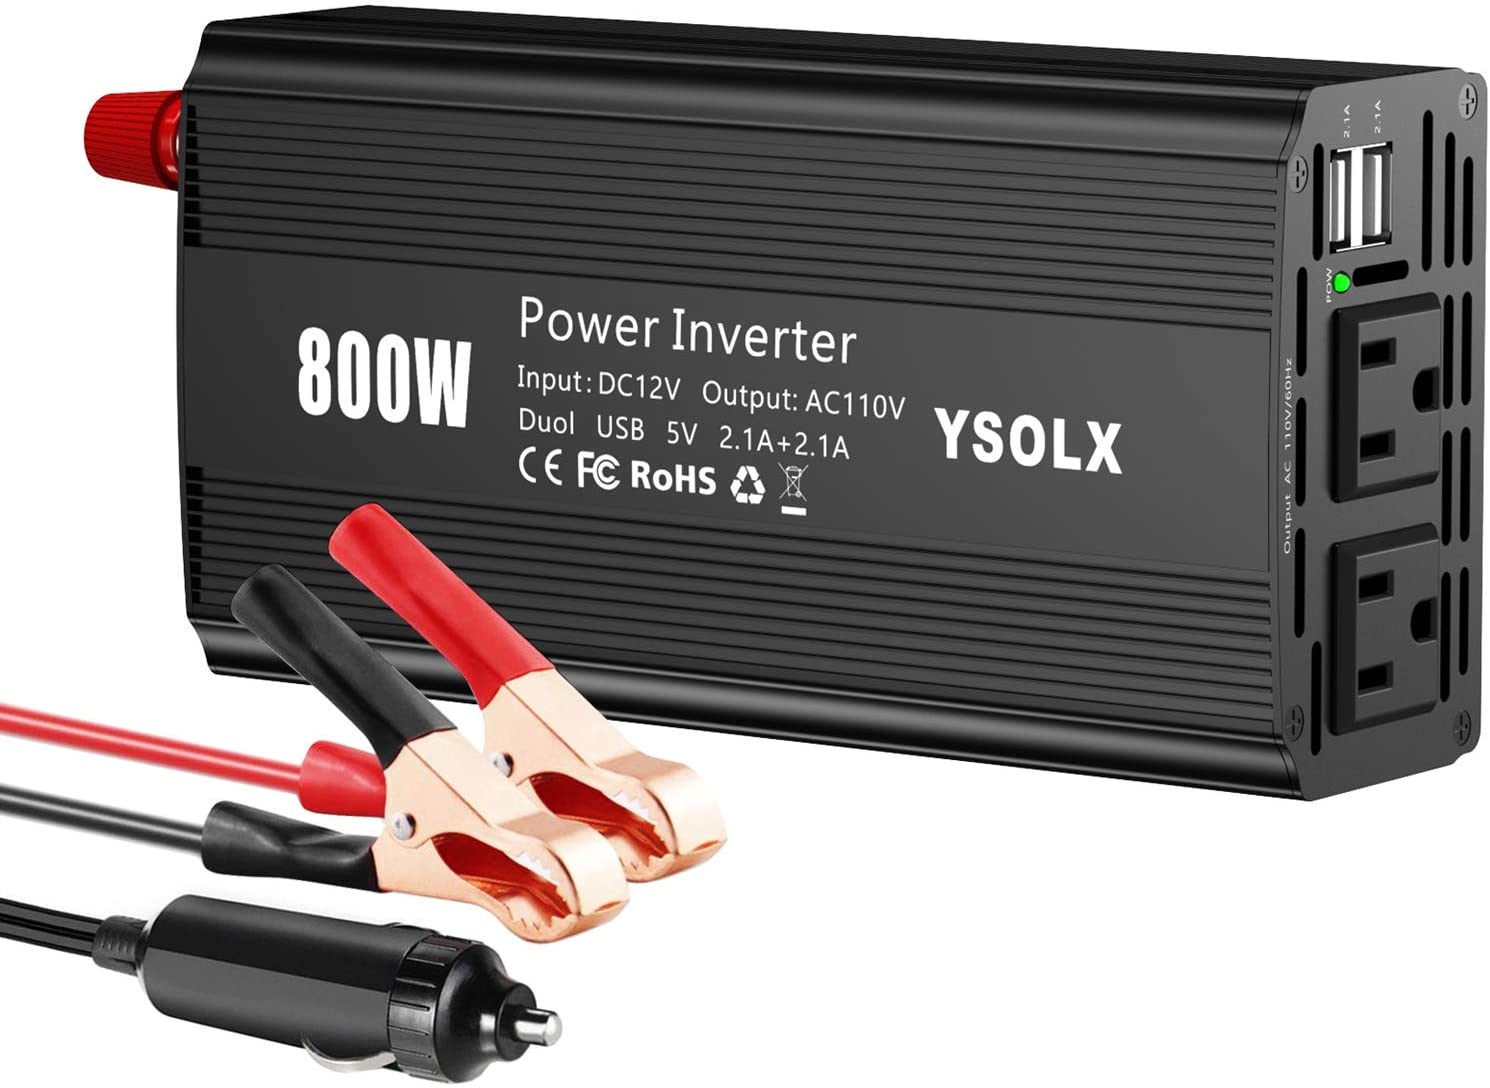 12V to 110V Power Converter - YSOLX 800W Power Inverter Review